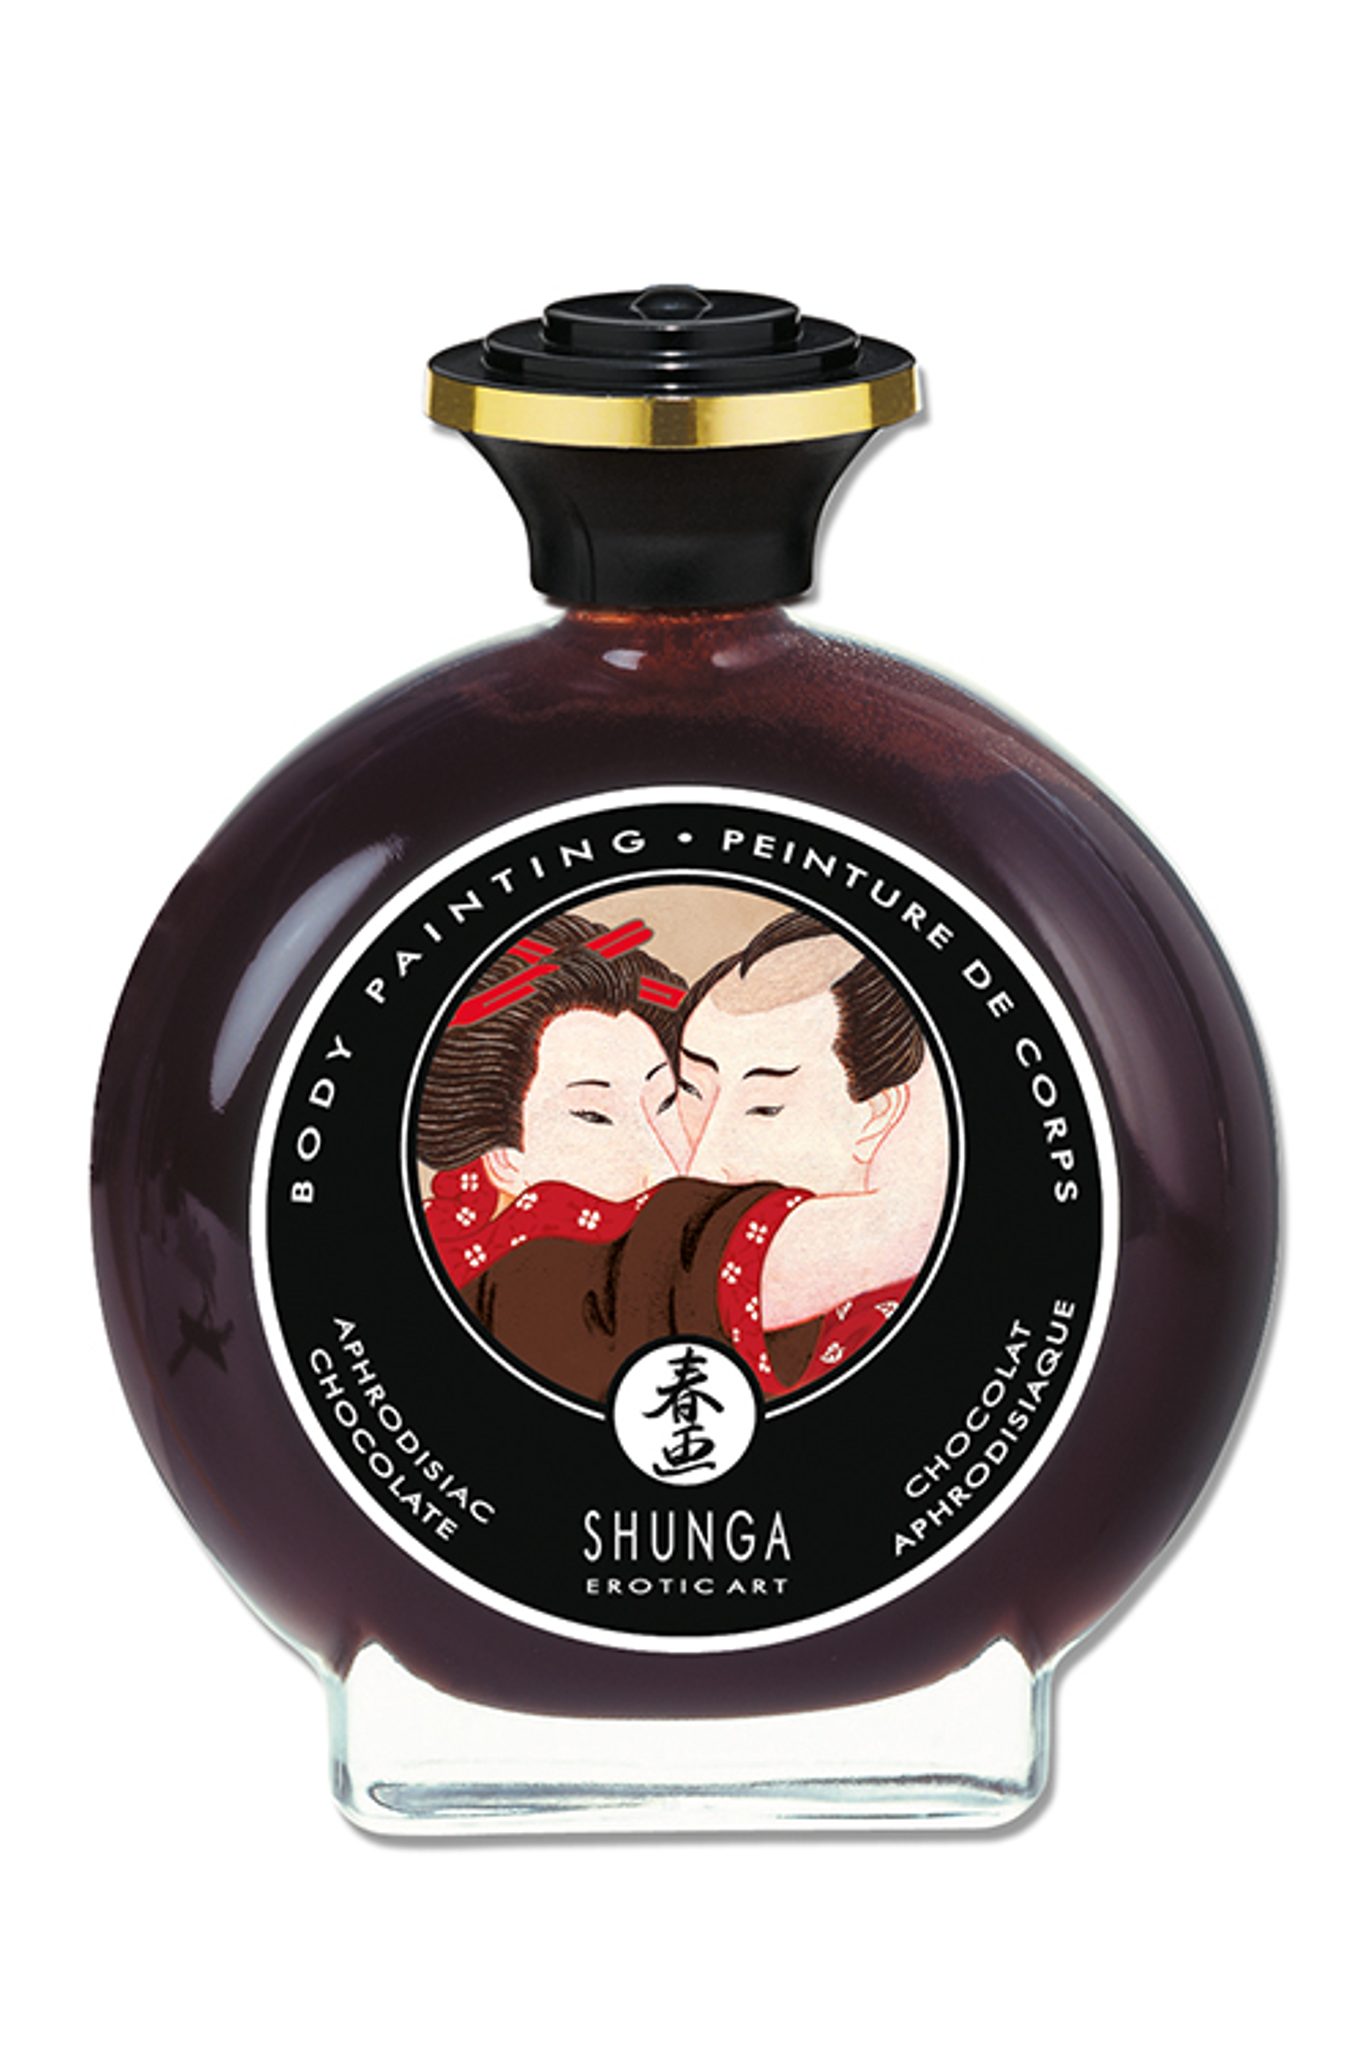 Shunga - Chocolate Bodypainting 100 ml